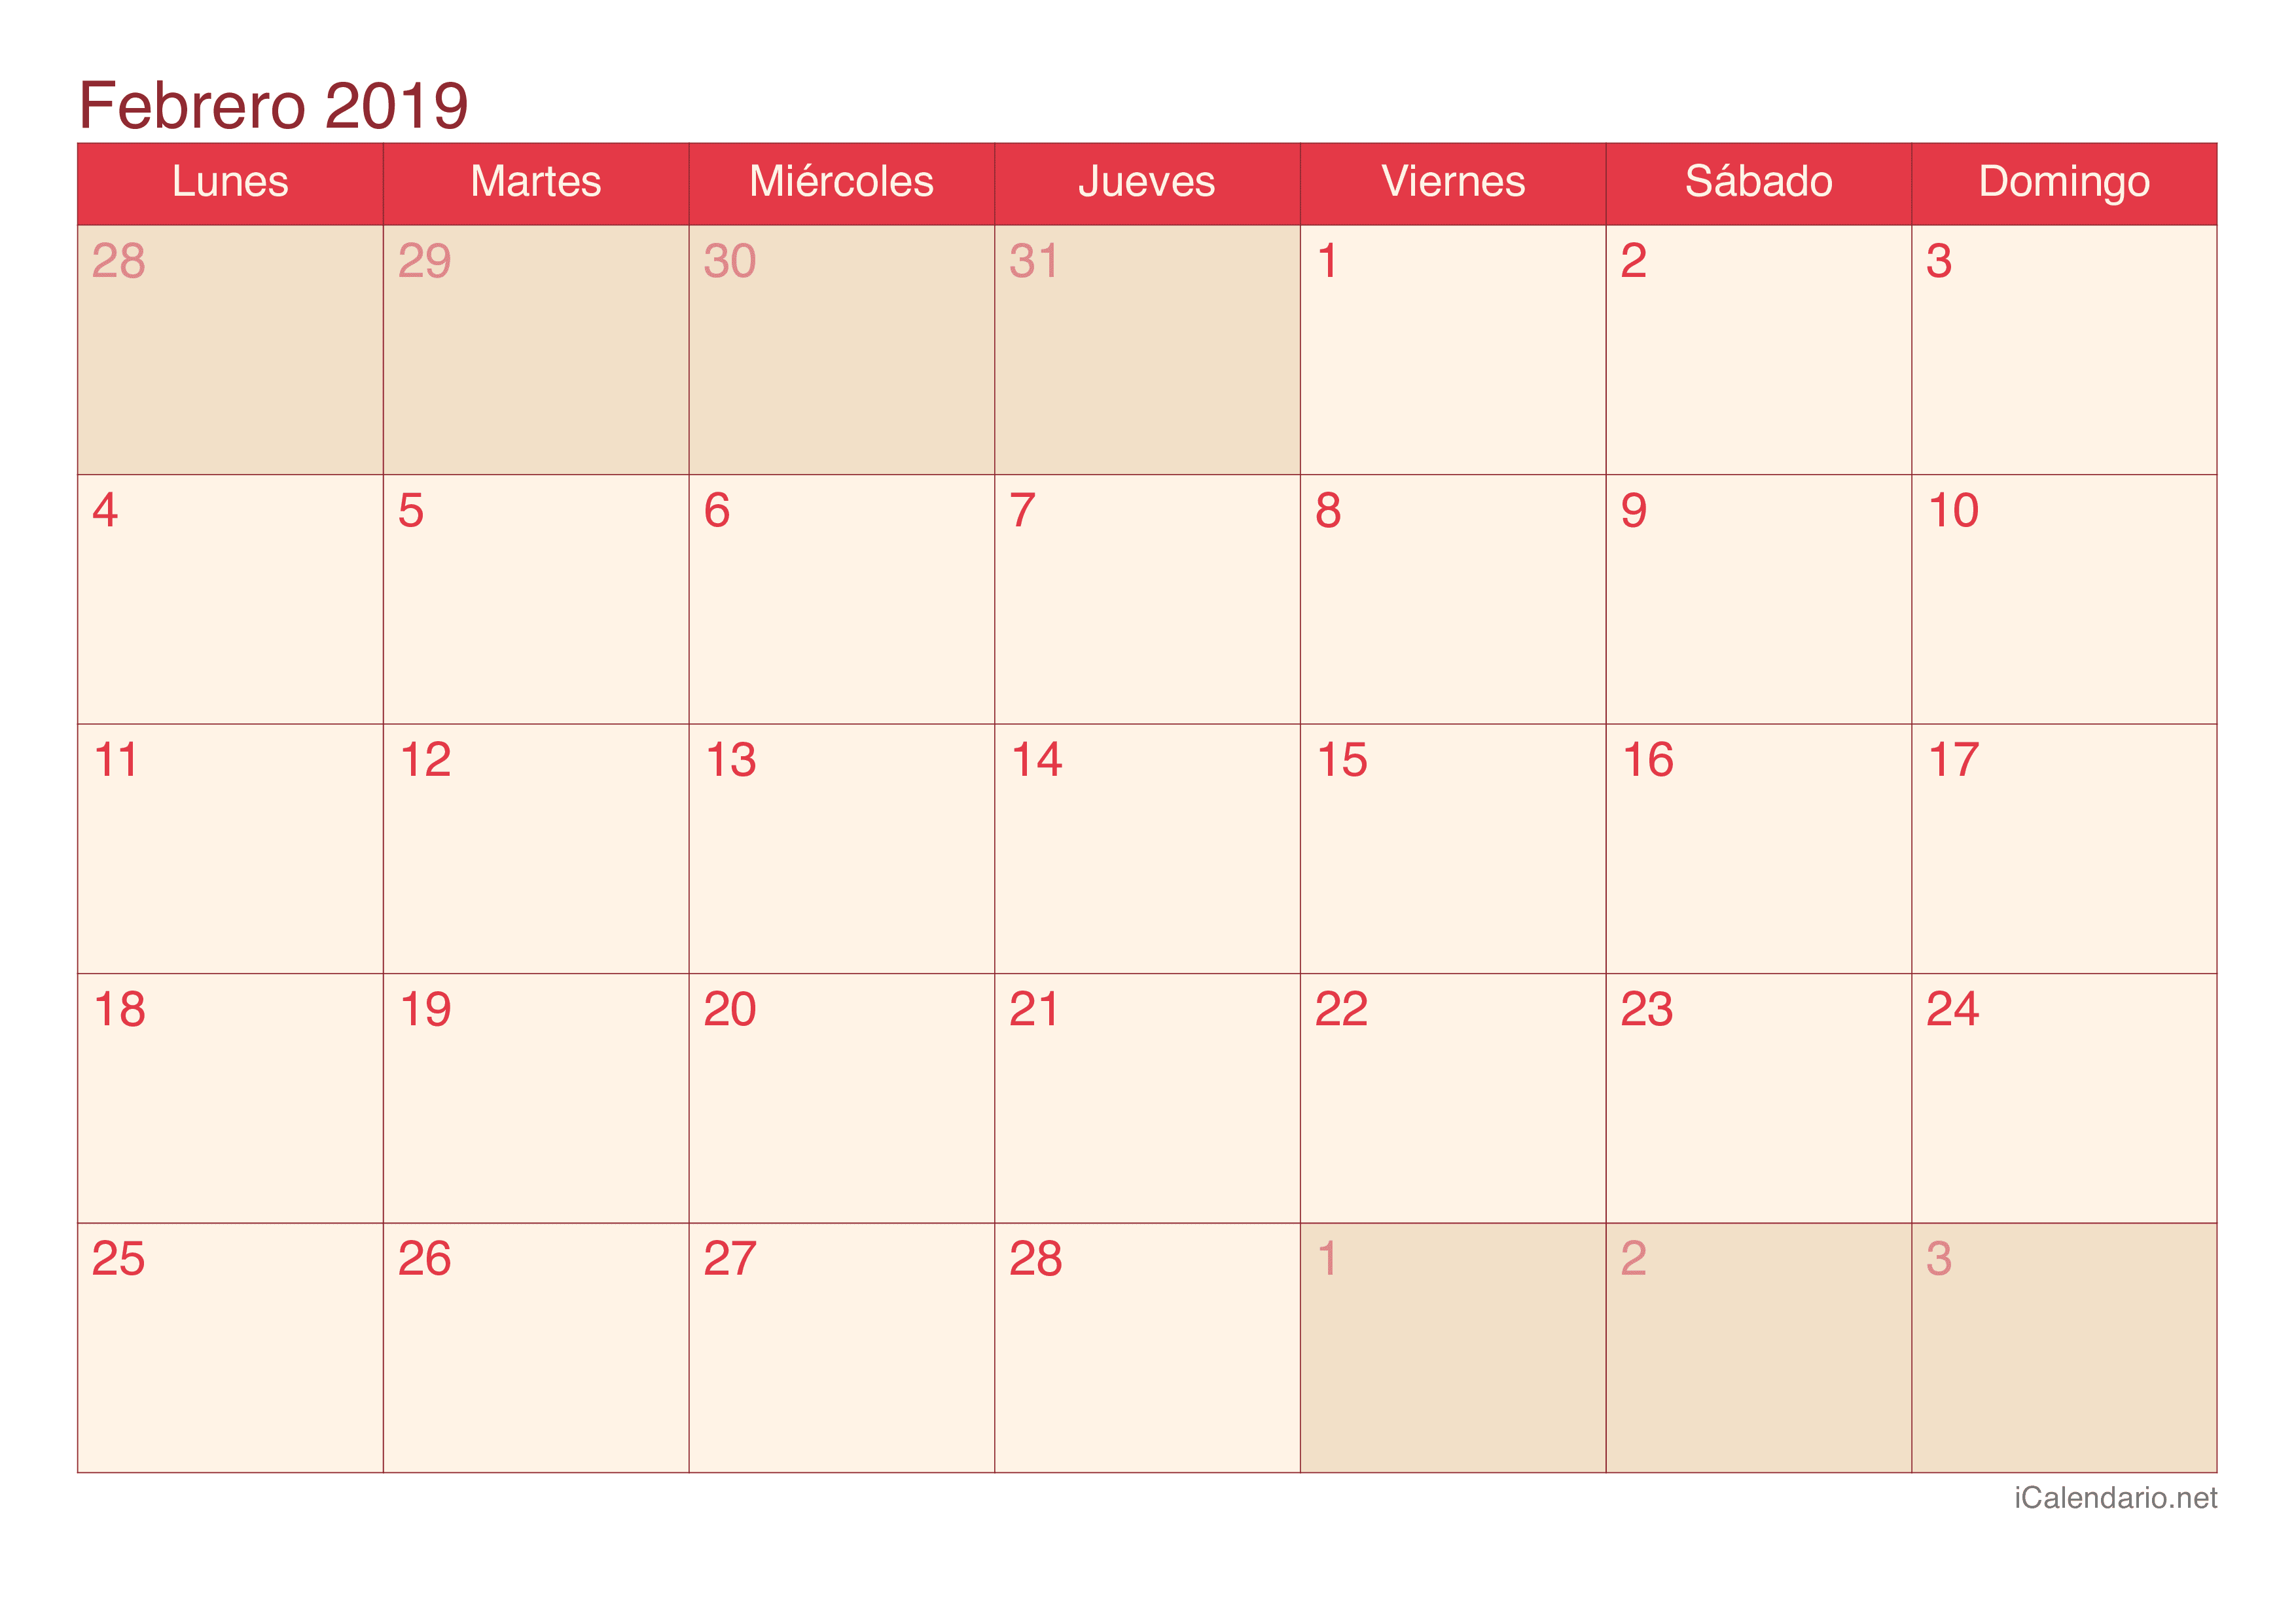 Calendario de febrero 2019 - Cherry